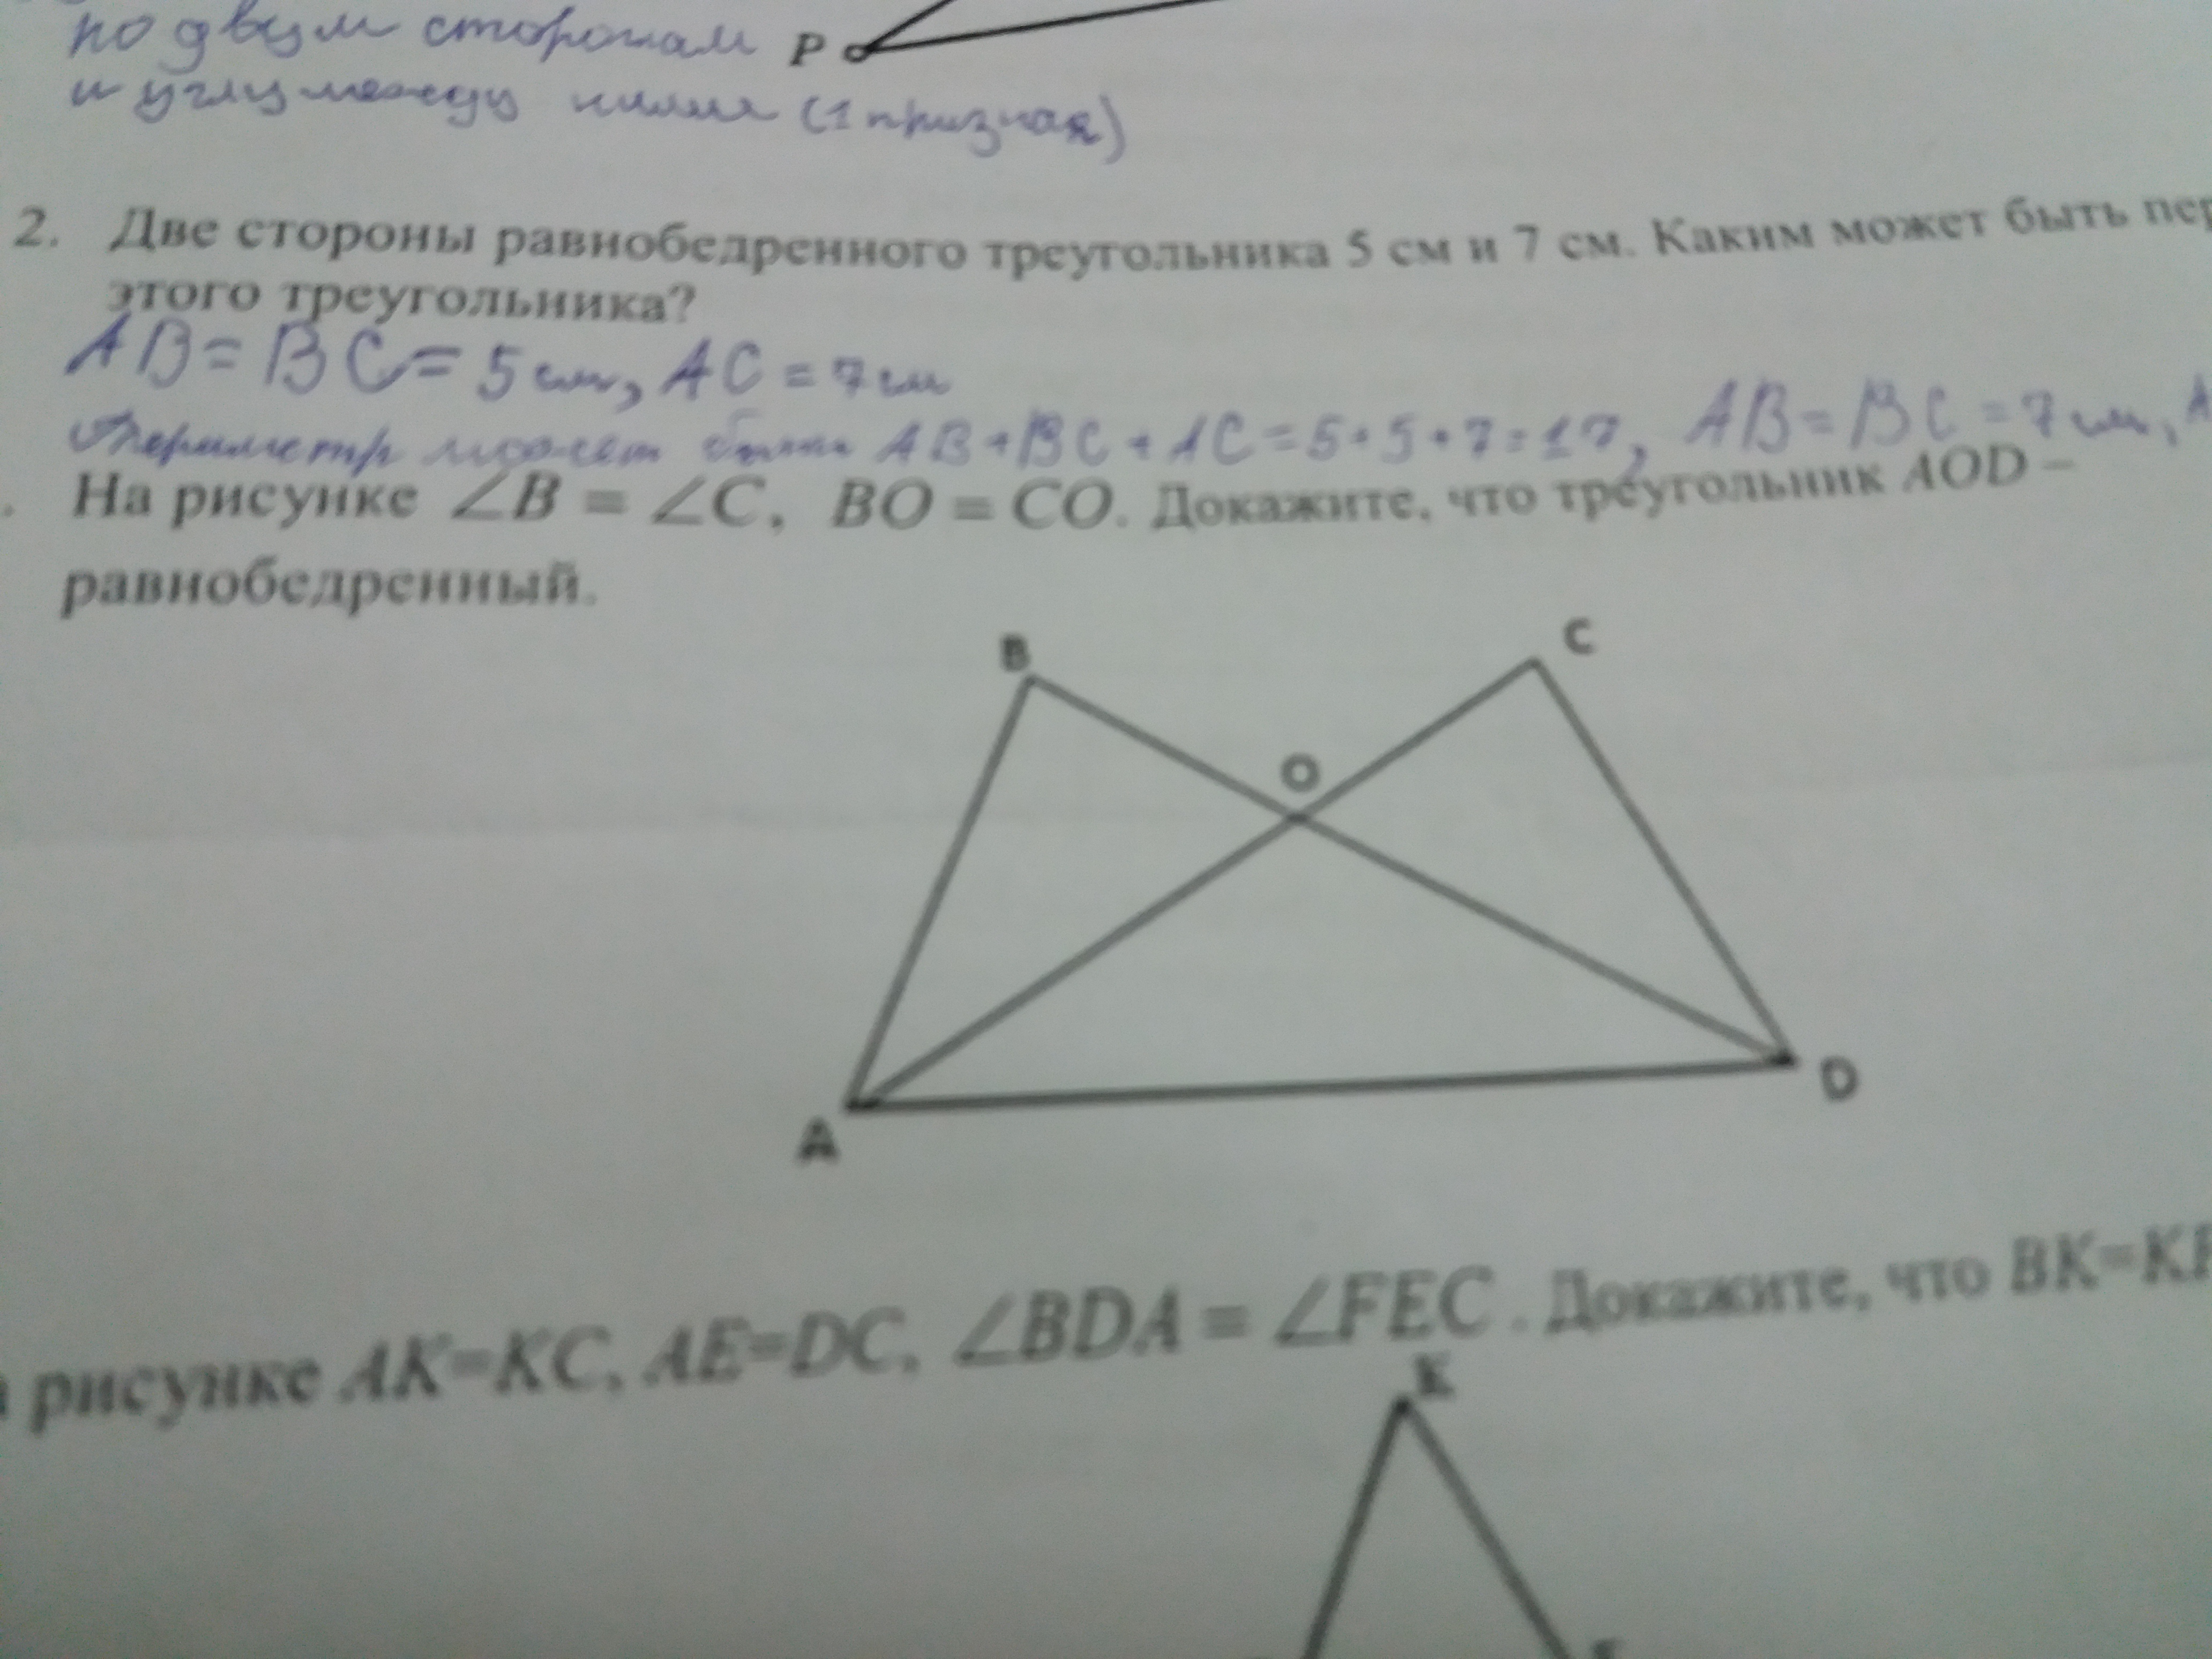 Треугольник авс доказать ав сд. Равнобедренный треугольник АОД. Треугольник DOB равнобедренный bd. Докажите что треугольник равнобедренный на рисунке. Дано АВСД трапеция доказать треугольник АОД подобен треугольнику сов.